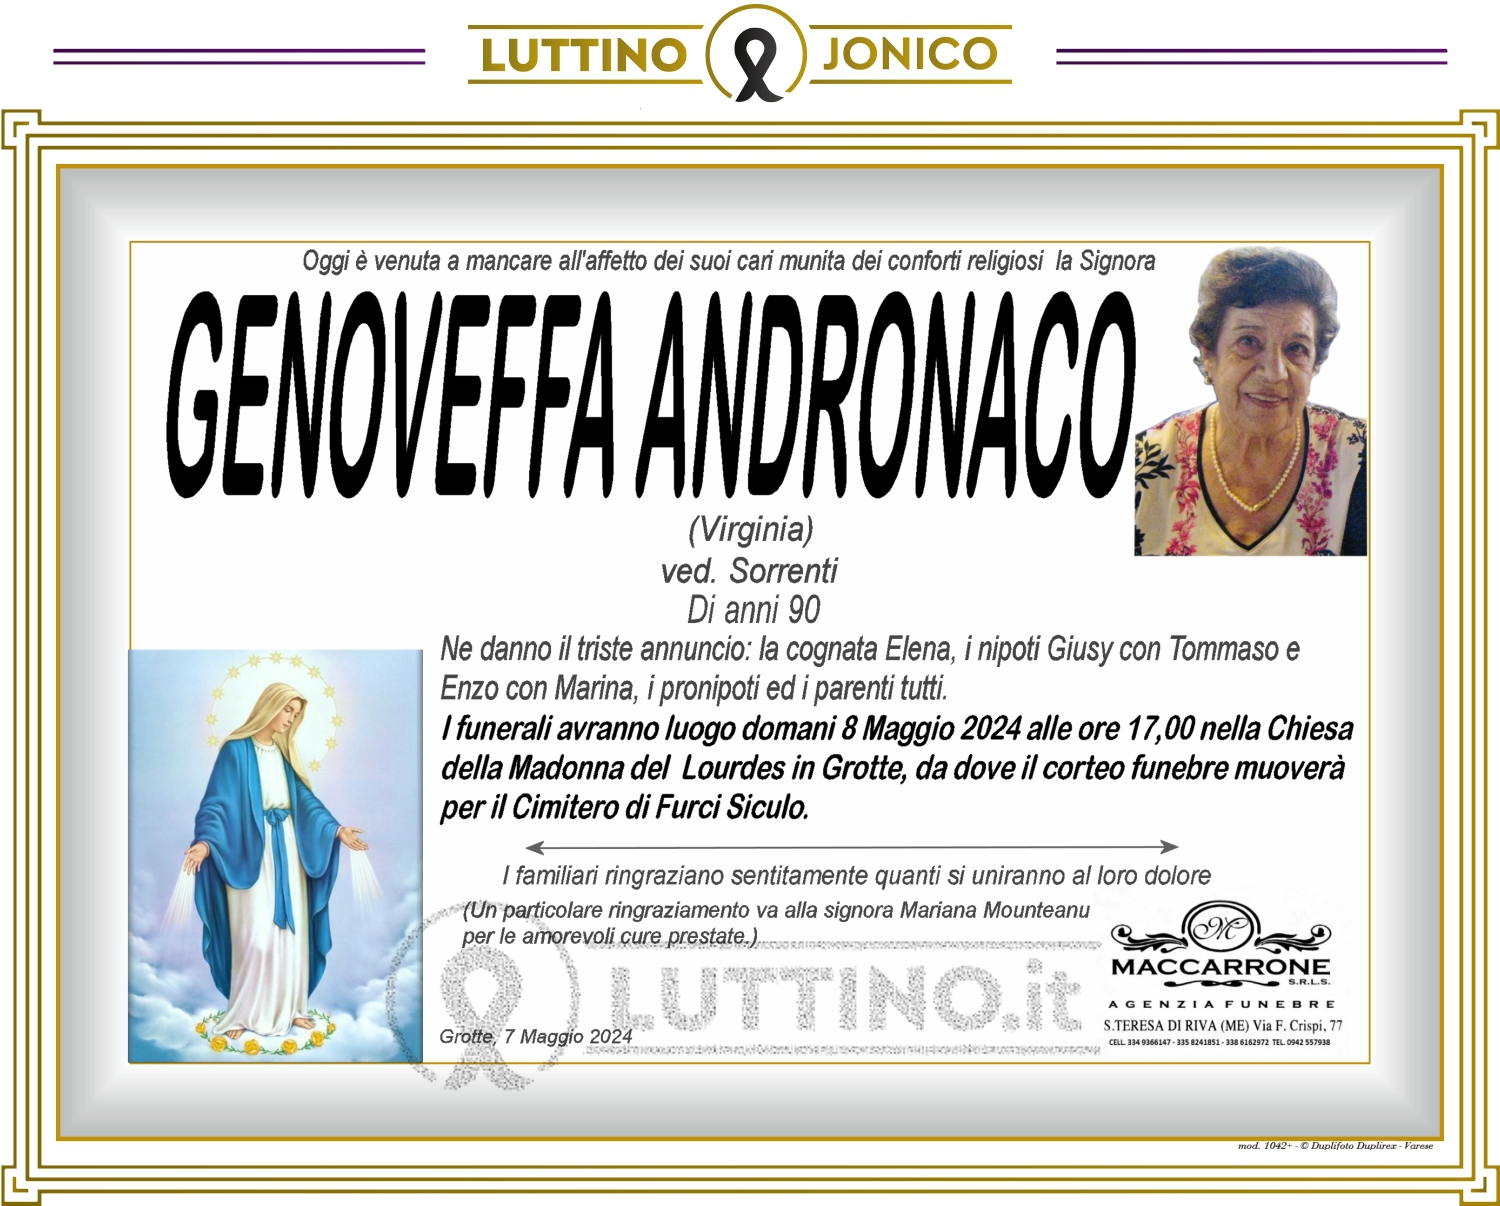 Genoveffa Andronaco